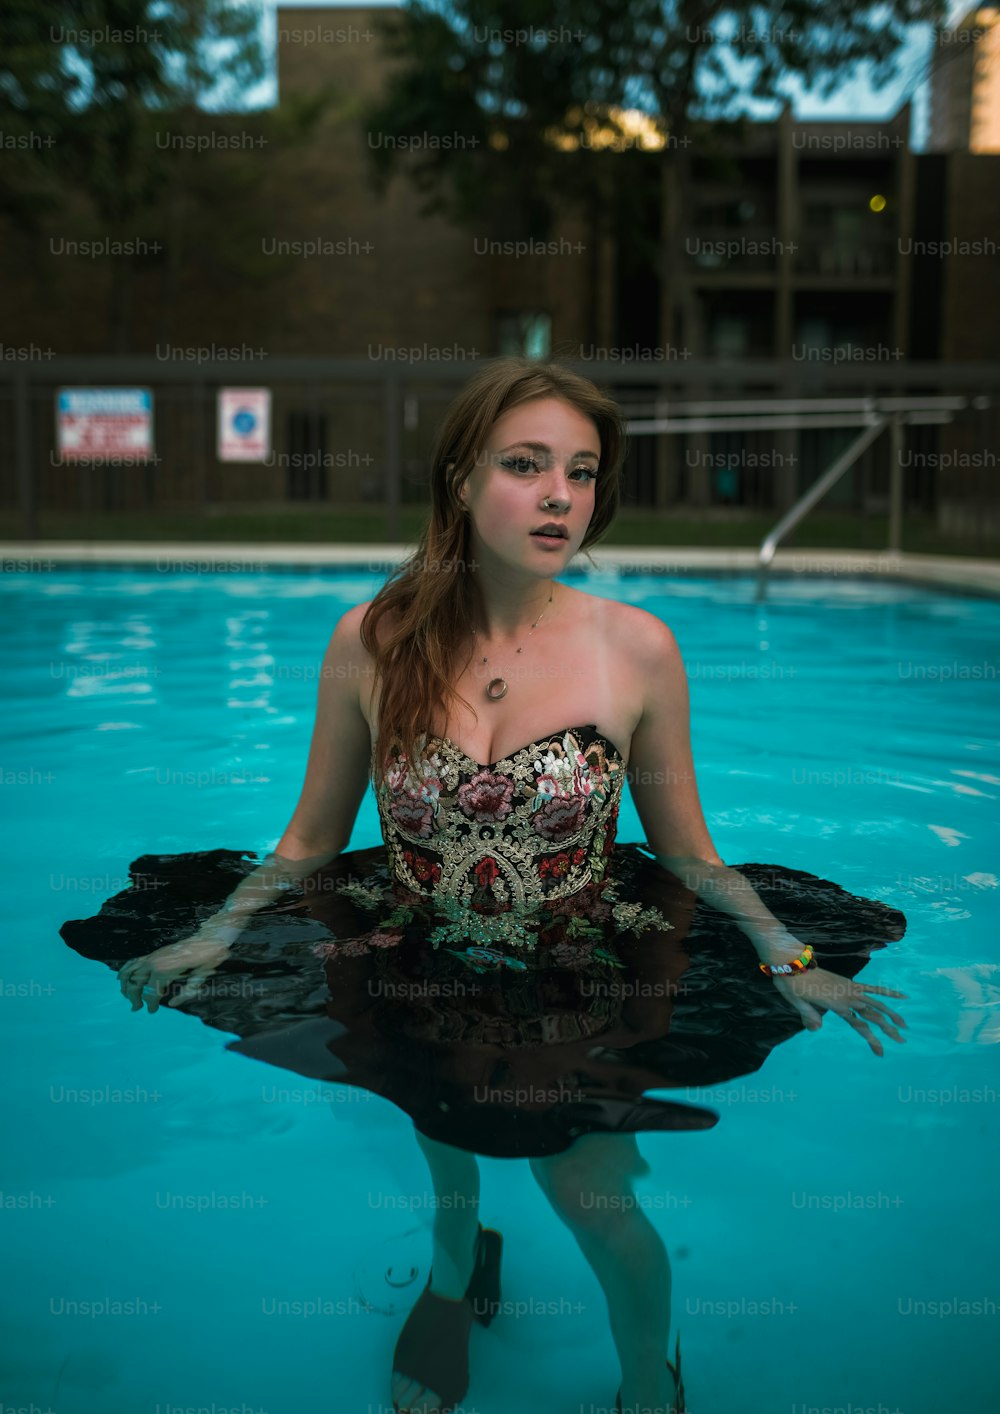 Une femme debout dans une piscine, les mains dans l’eau